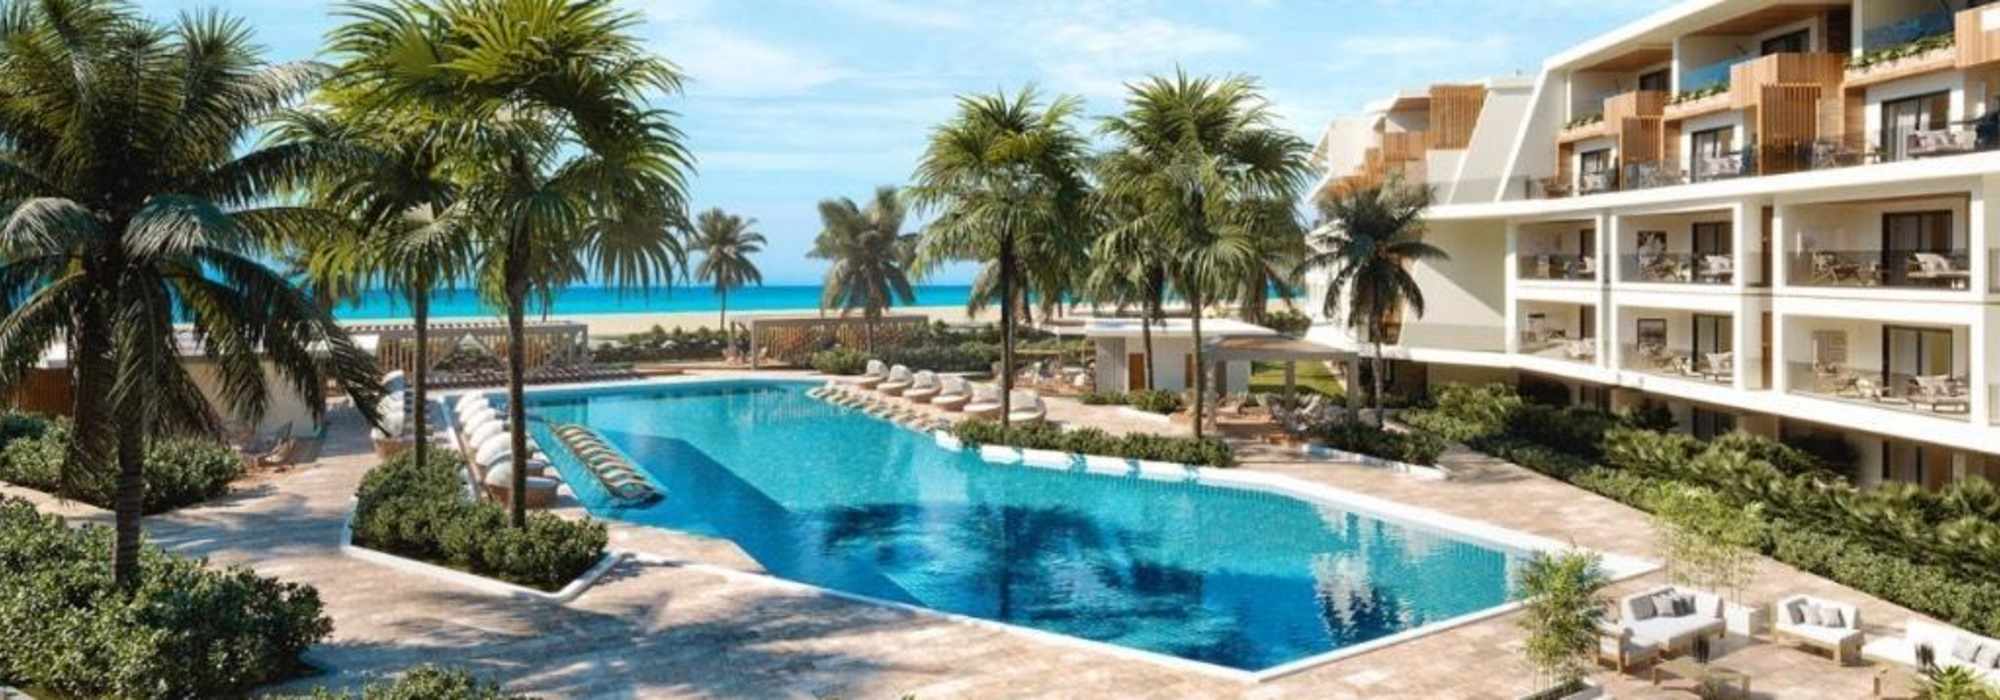 Vendo apartamento frente a la playa en Punta cana